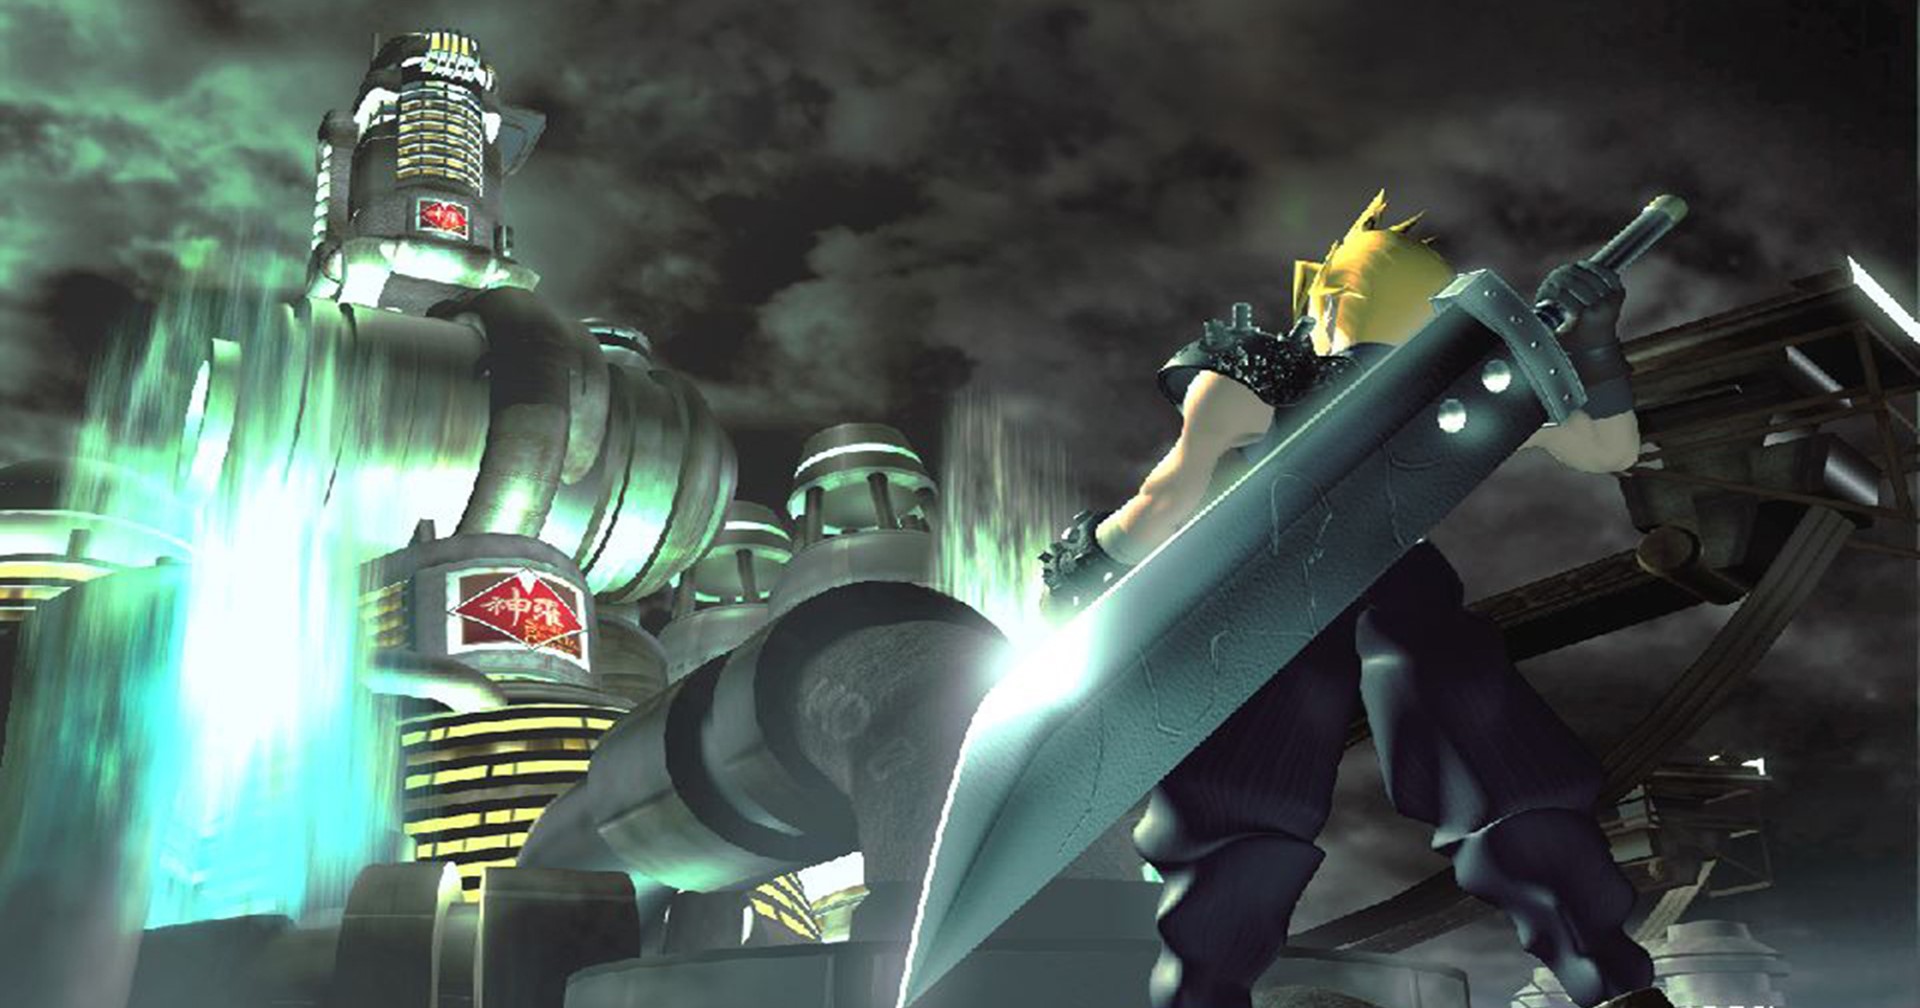 ผู้สร้างบอกเกม Final Fantasy VII ประสบความสำเร็จในตะวันตกเพราะมี CG